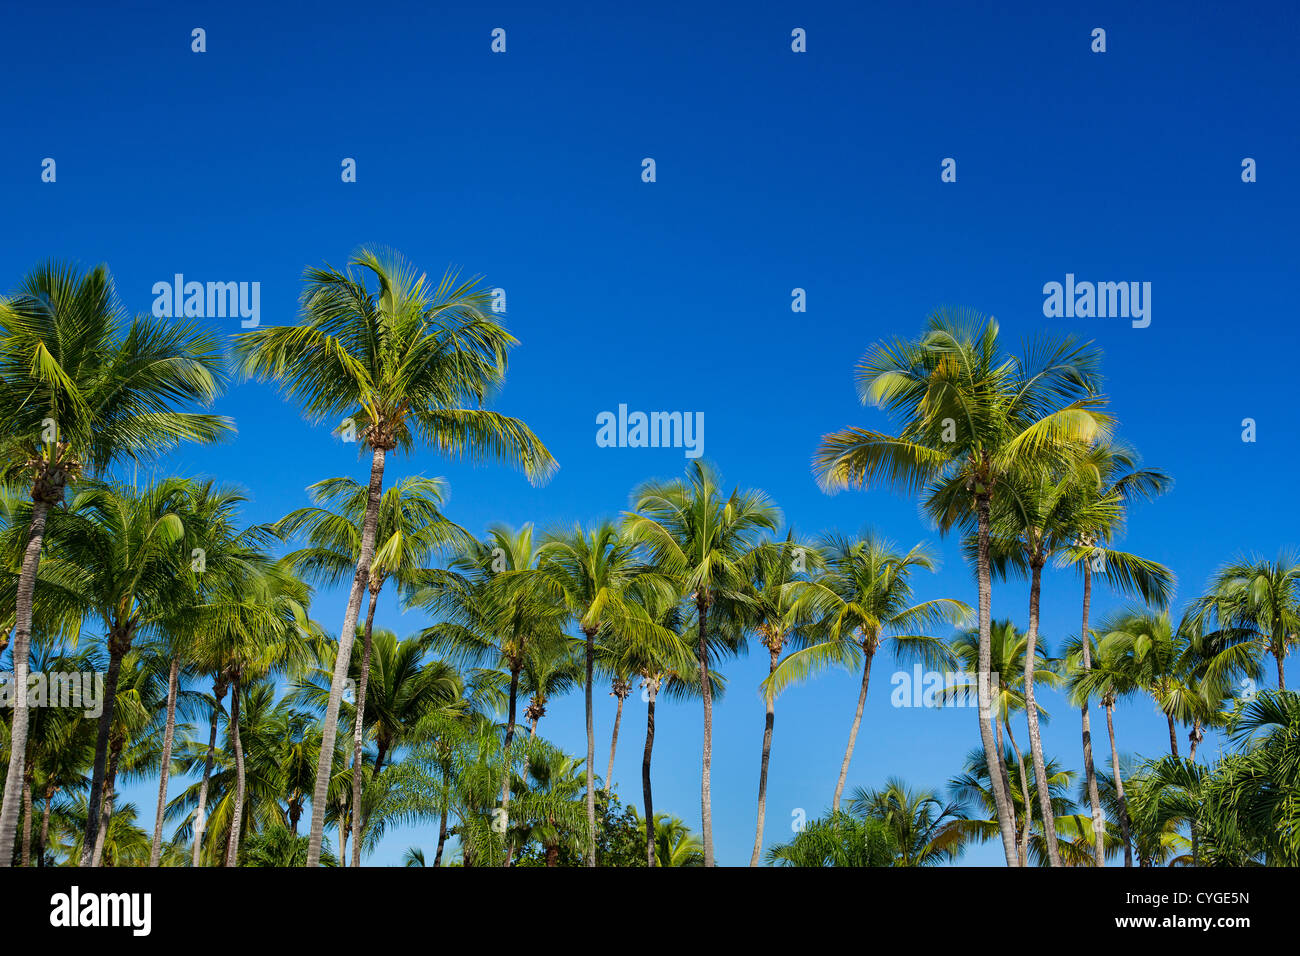 SAN JUAN, PORTO RICO - Palmiers à Isla Verde beach resort. Banque D'Images